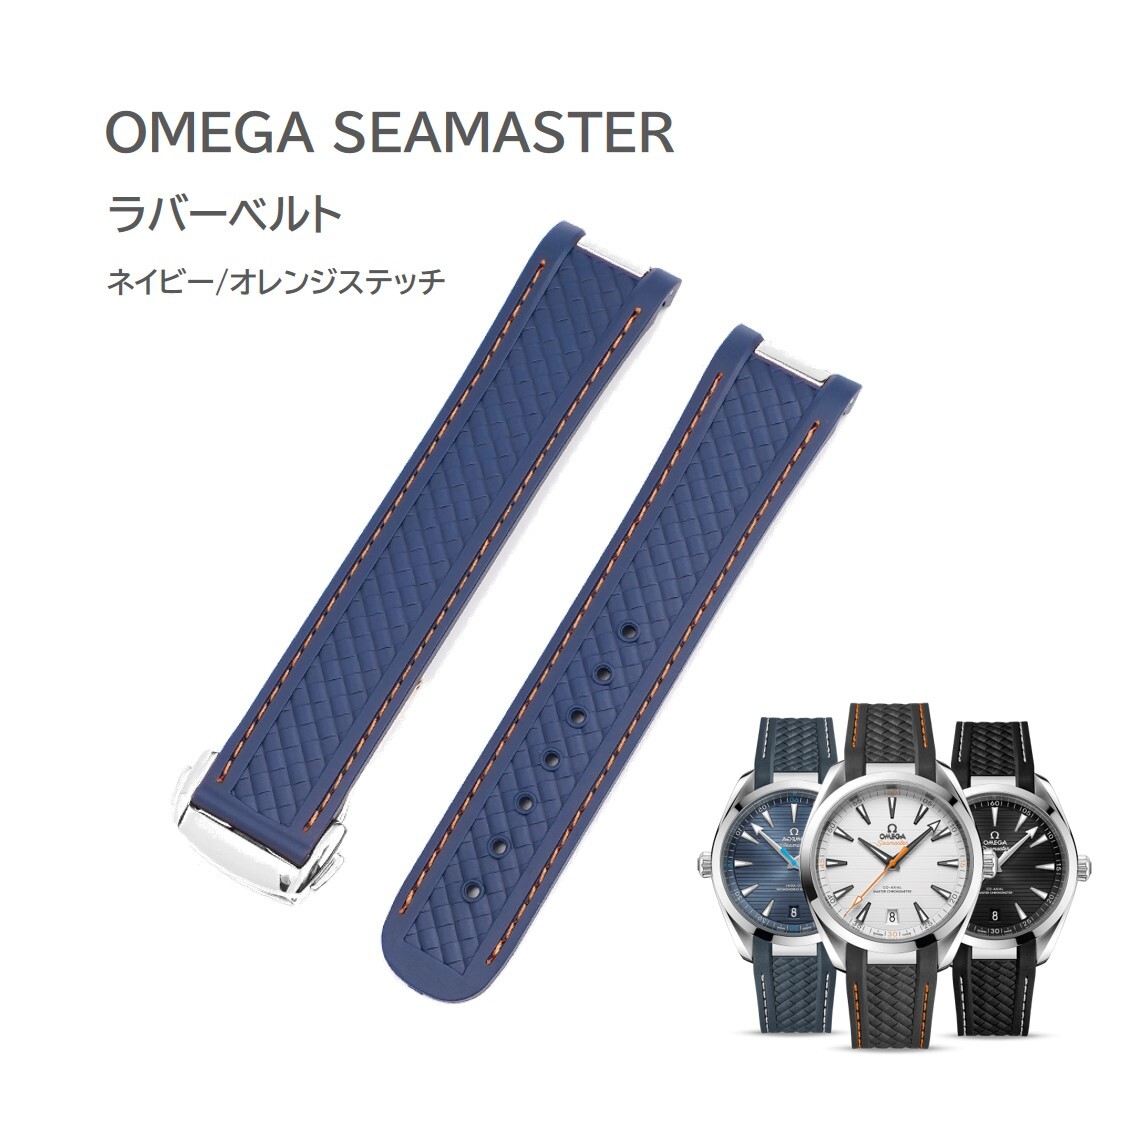  Omega   seamaster  реакция ... ремень   военно-морской флот / оранжевый  стежок （  серебристый ）